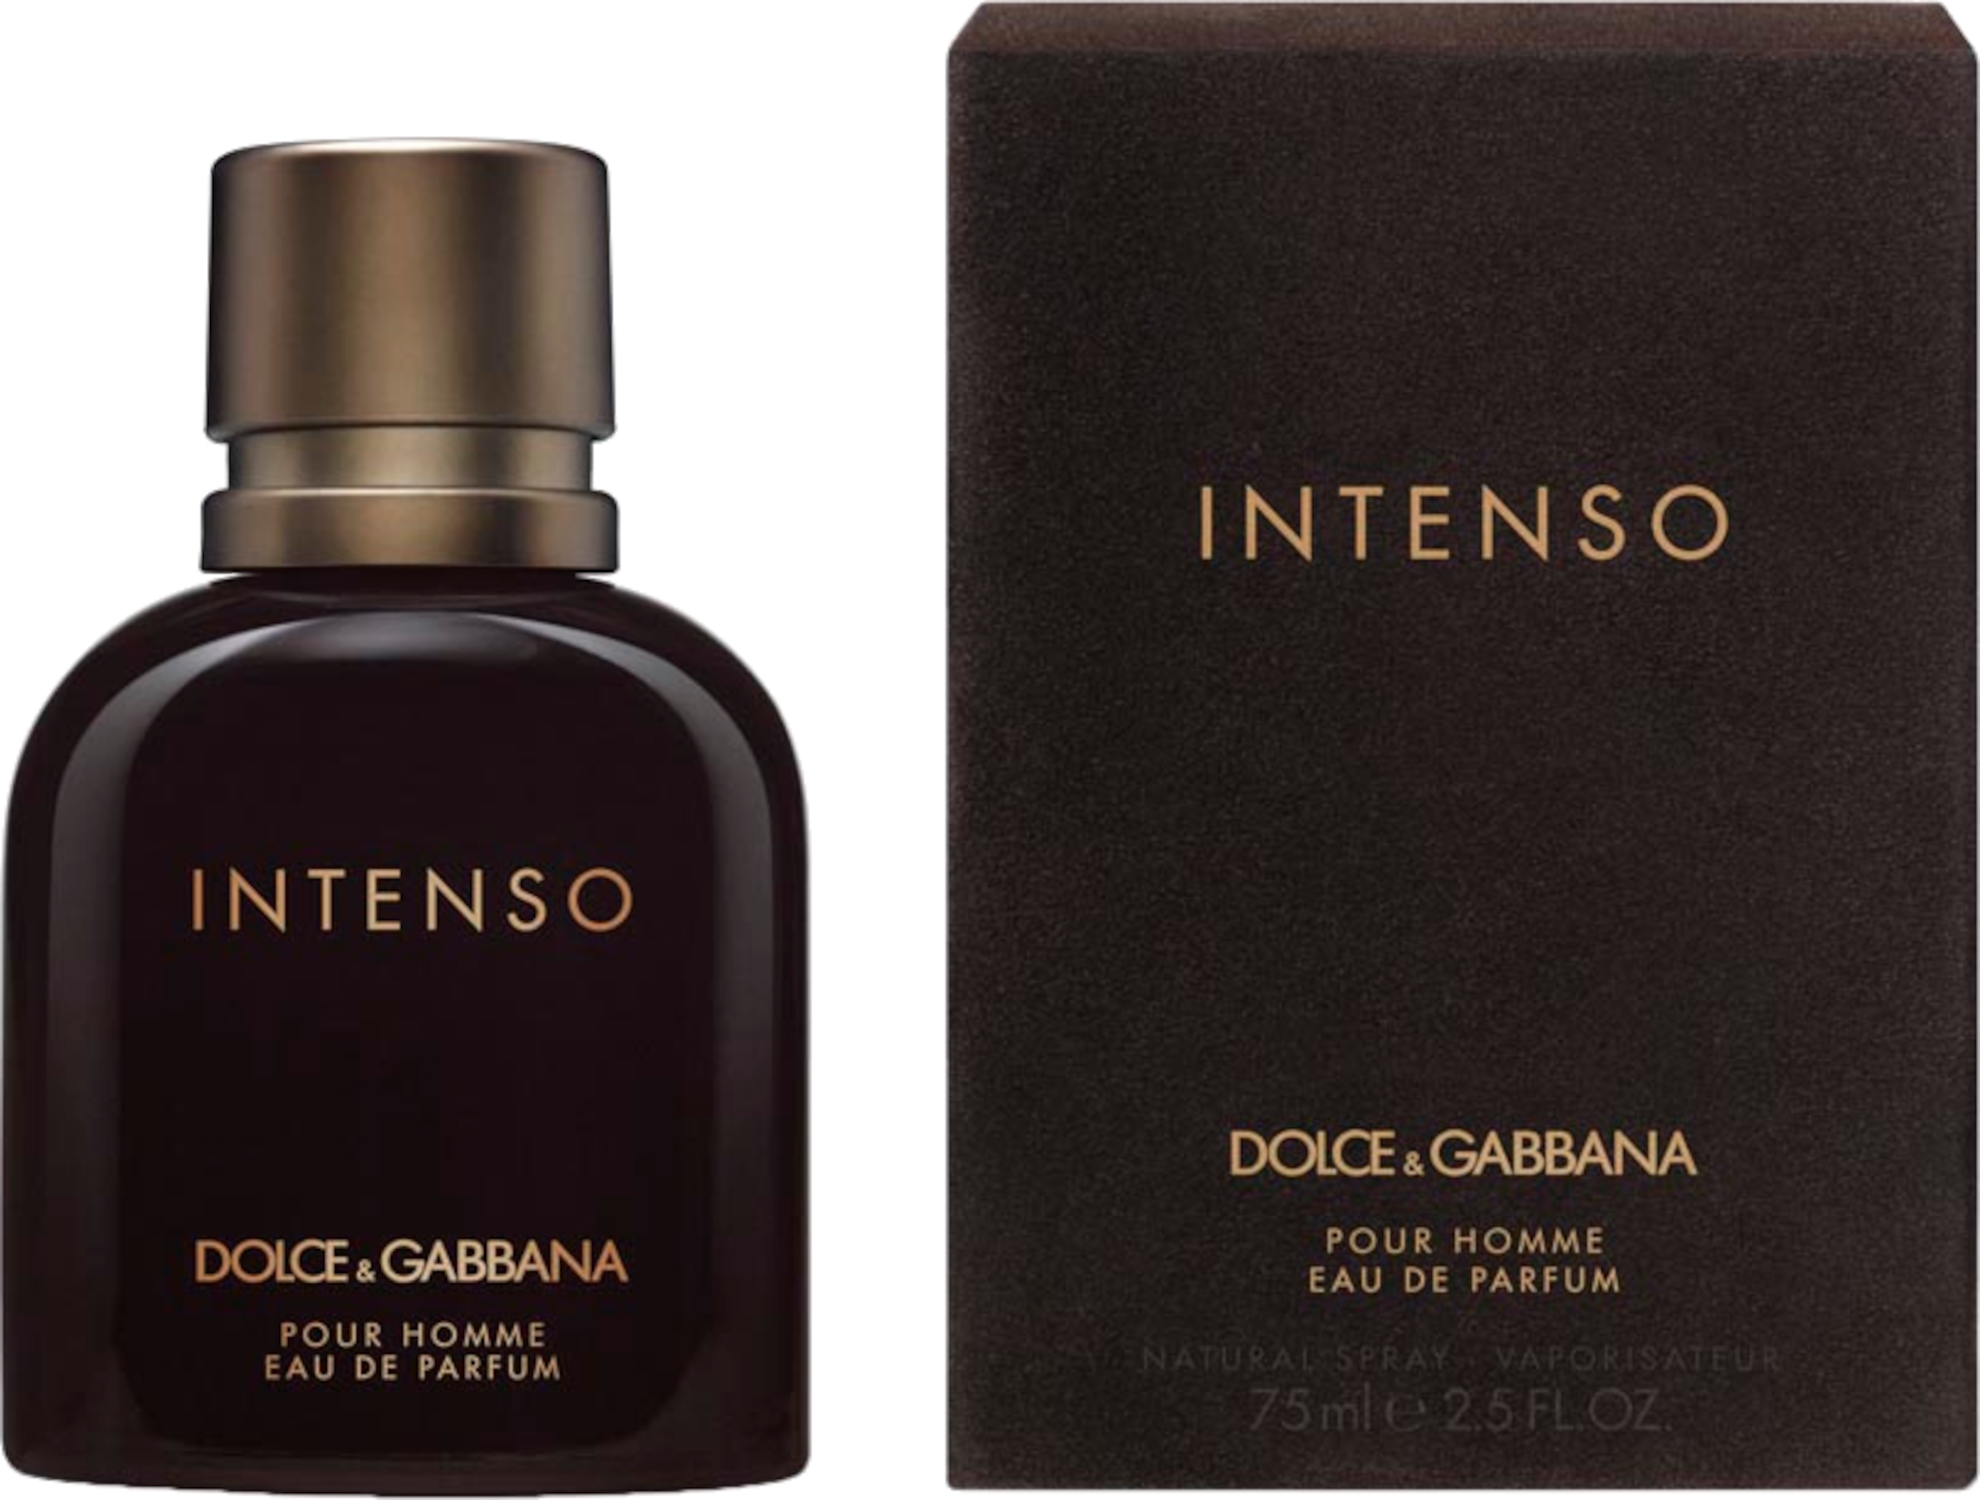 Dolce & Gabbana Intenso Eau de Parfum 75 ml